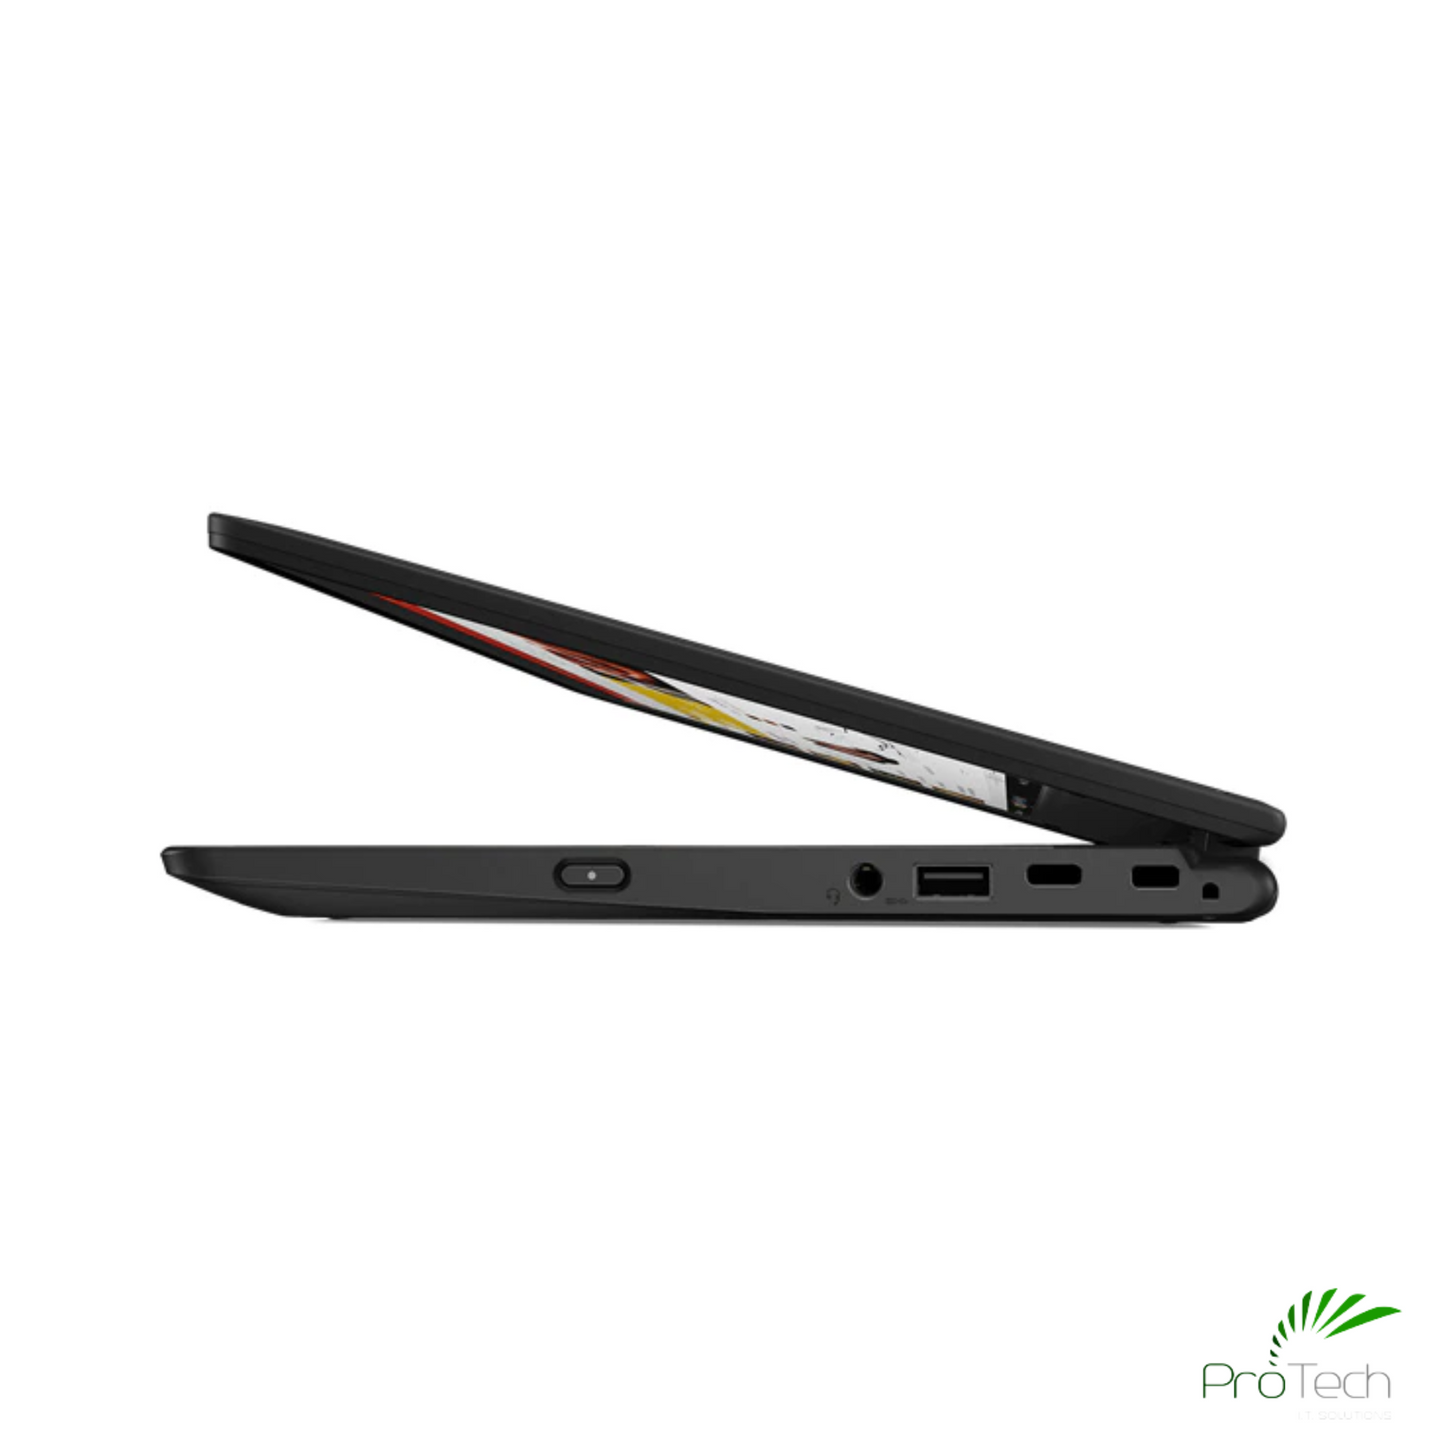 Lenovo ThinkPad 11e (5th Gen) | Celeron N4120 | 4GB RAM | 128GB SSD ProTech I.T. Solutions